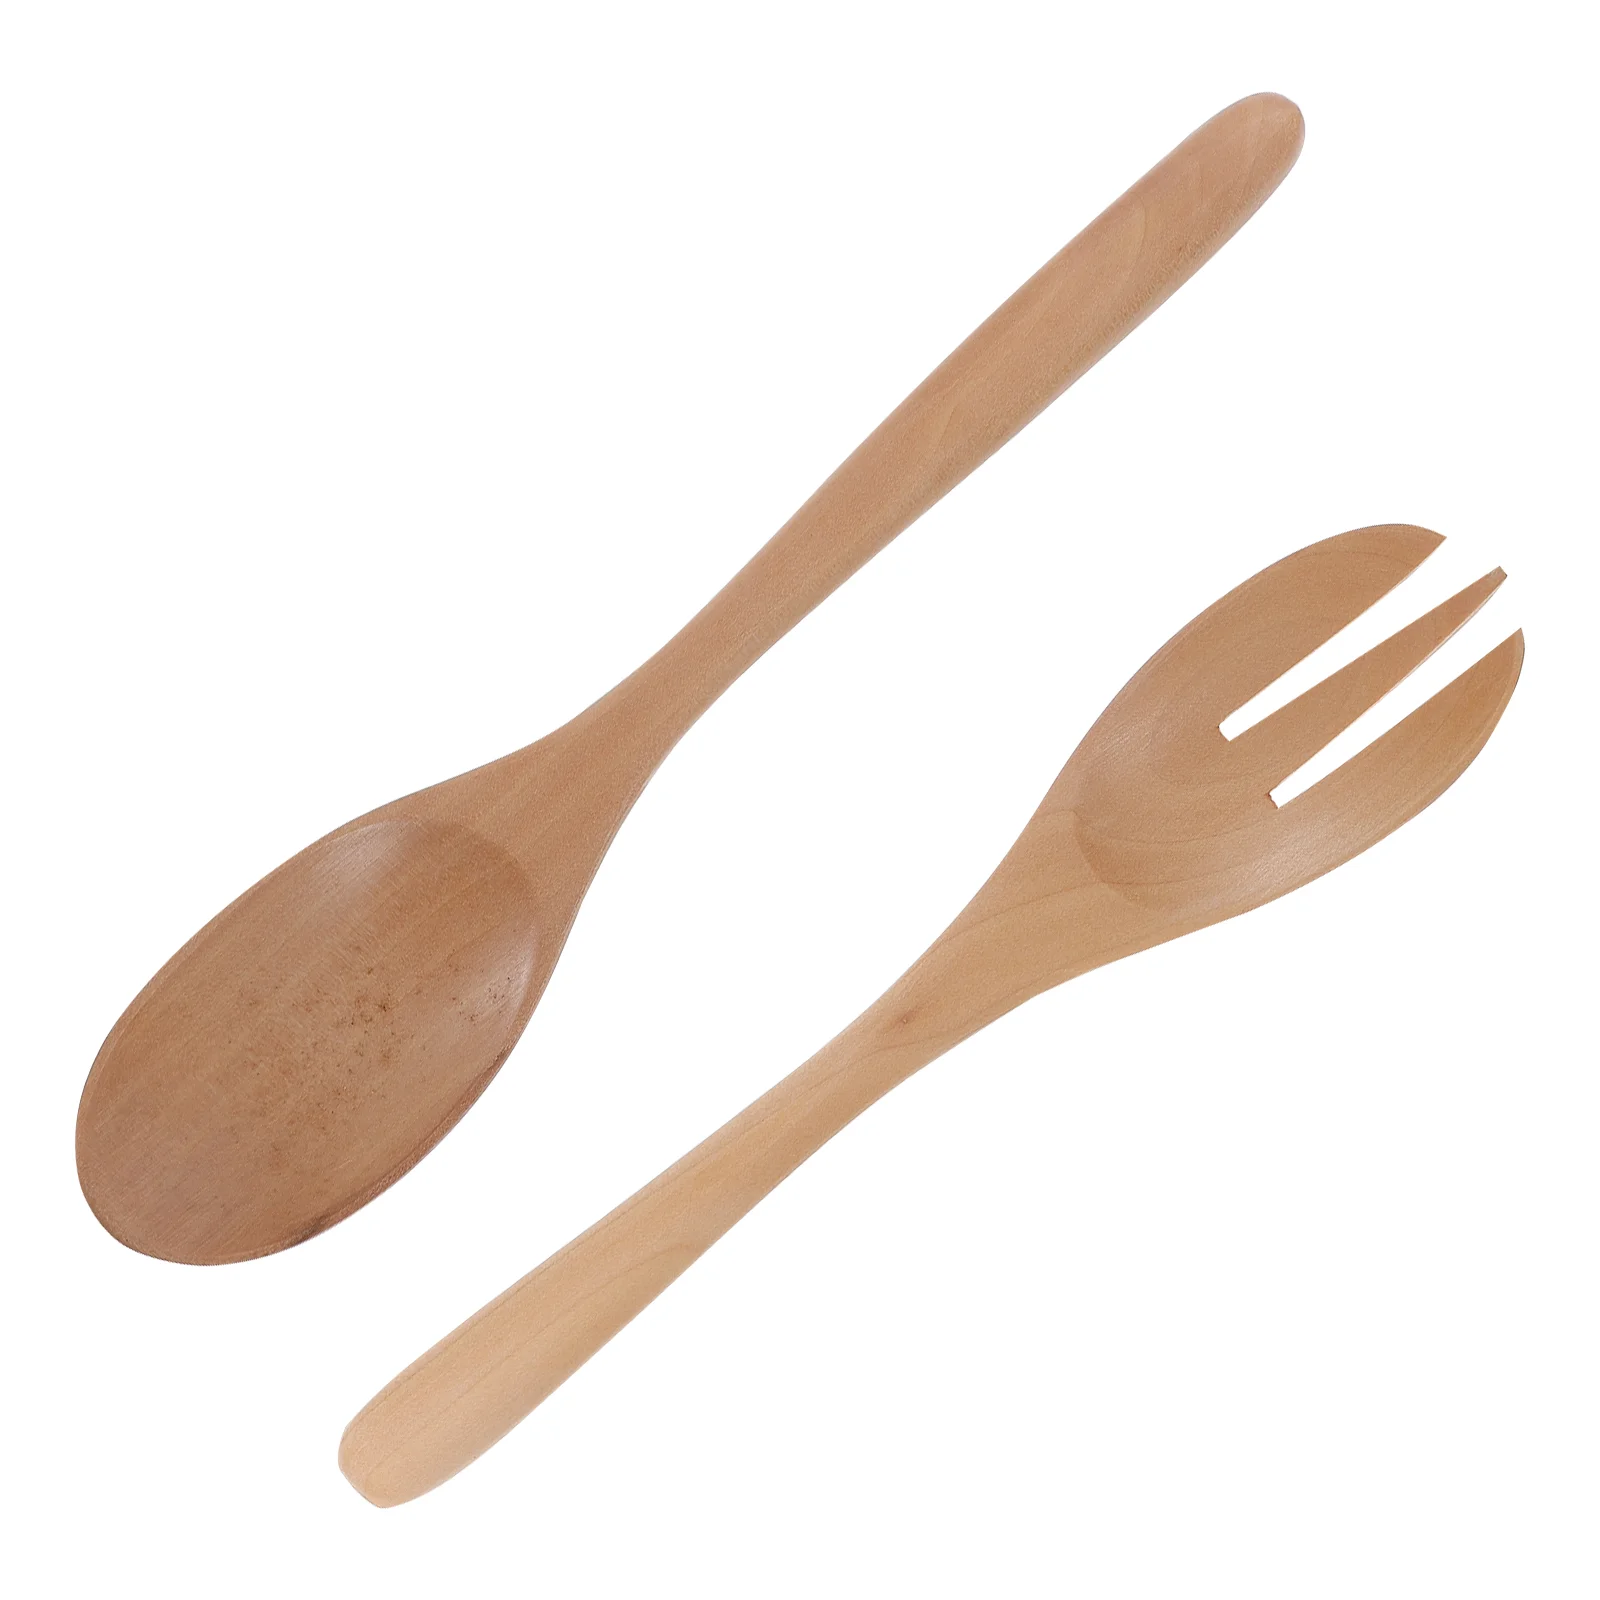 

Salad Wooden Spoon Silverware Spoons Tableware Utensils Servers Pork Smooth Fork